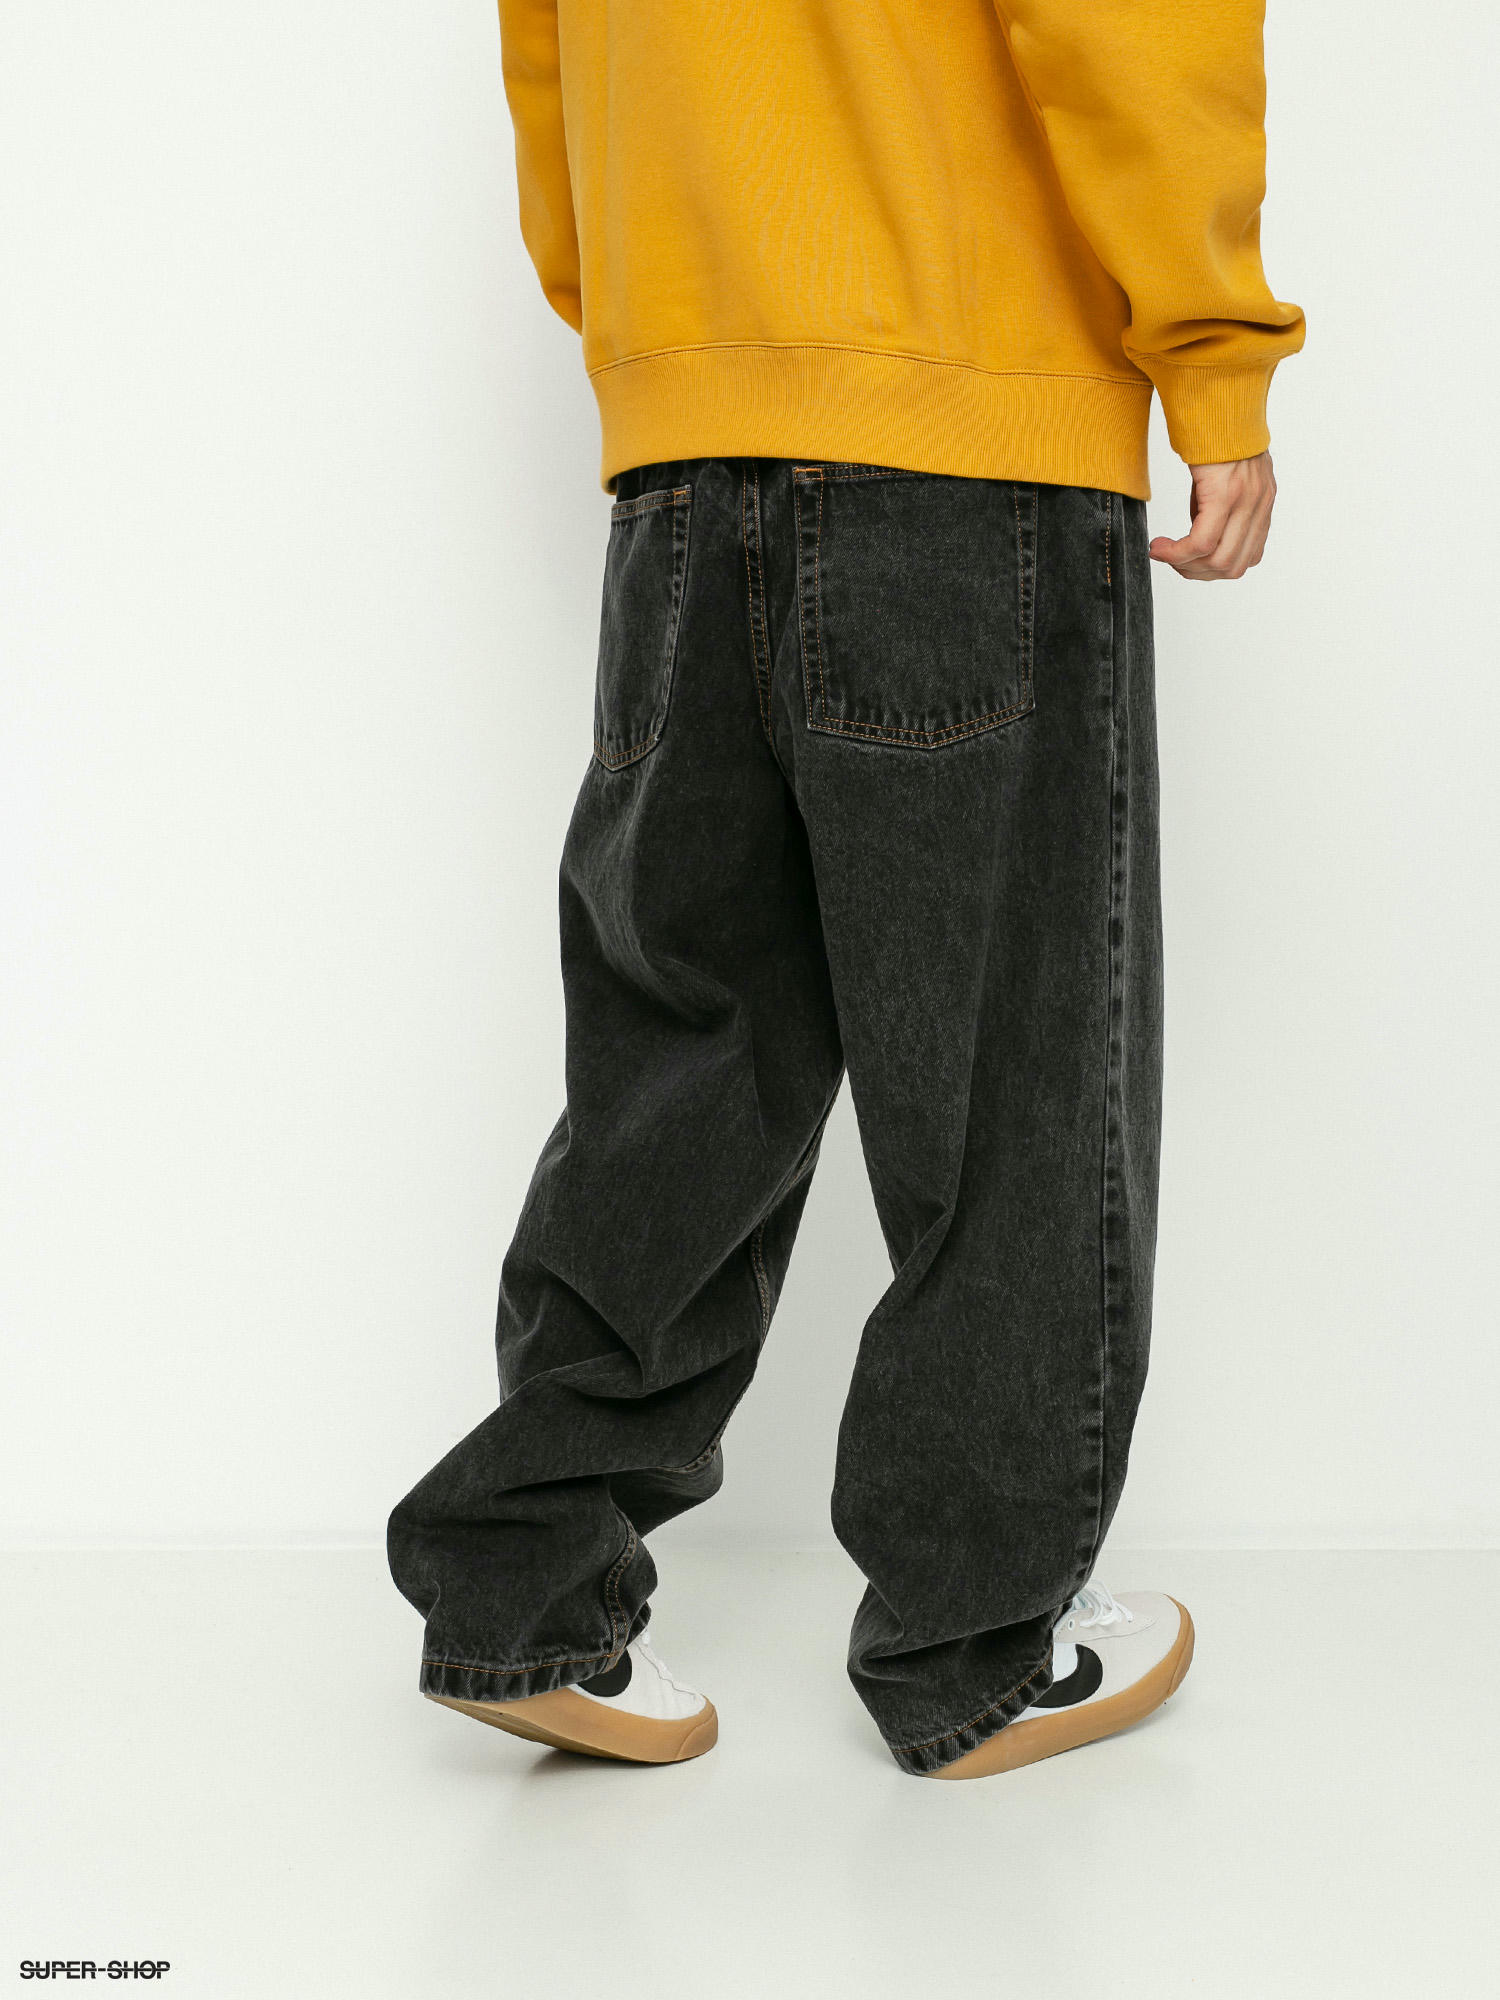 Polar Skate Big Boy Jeans Pants (washed black)